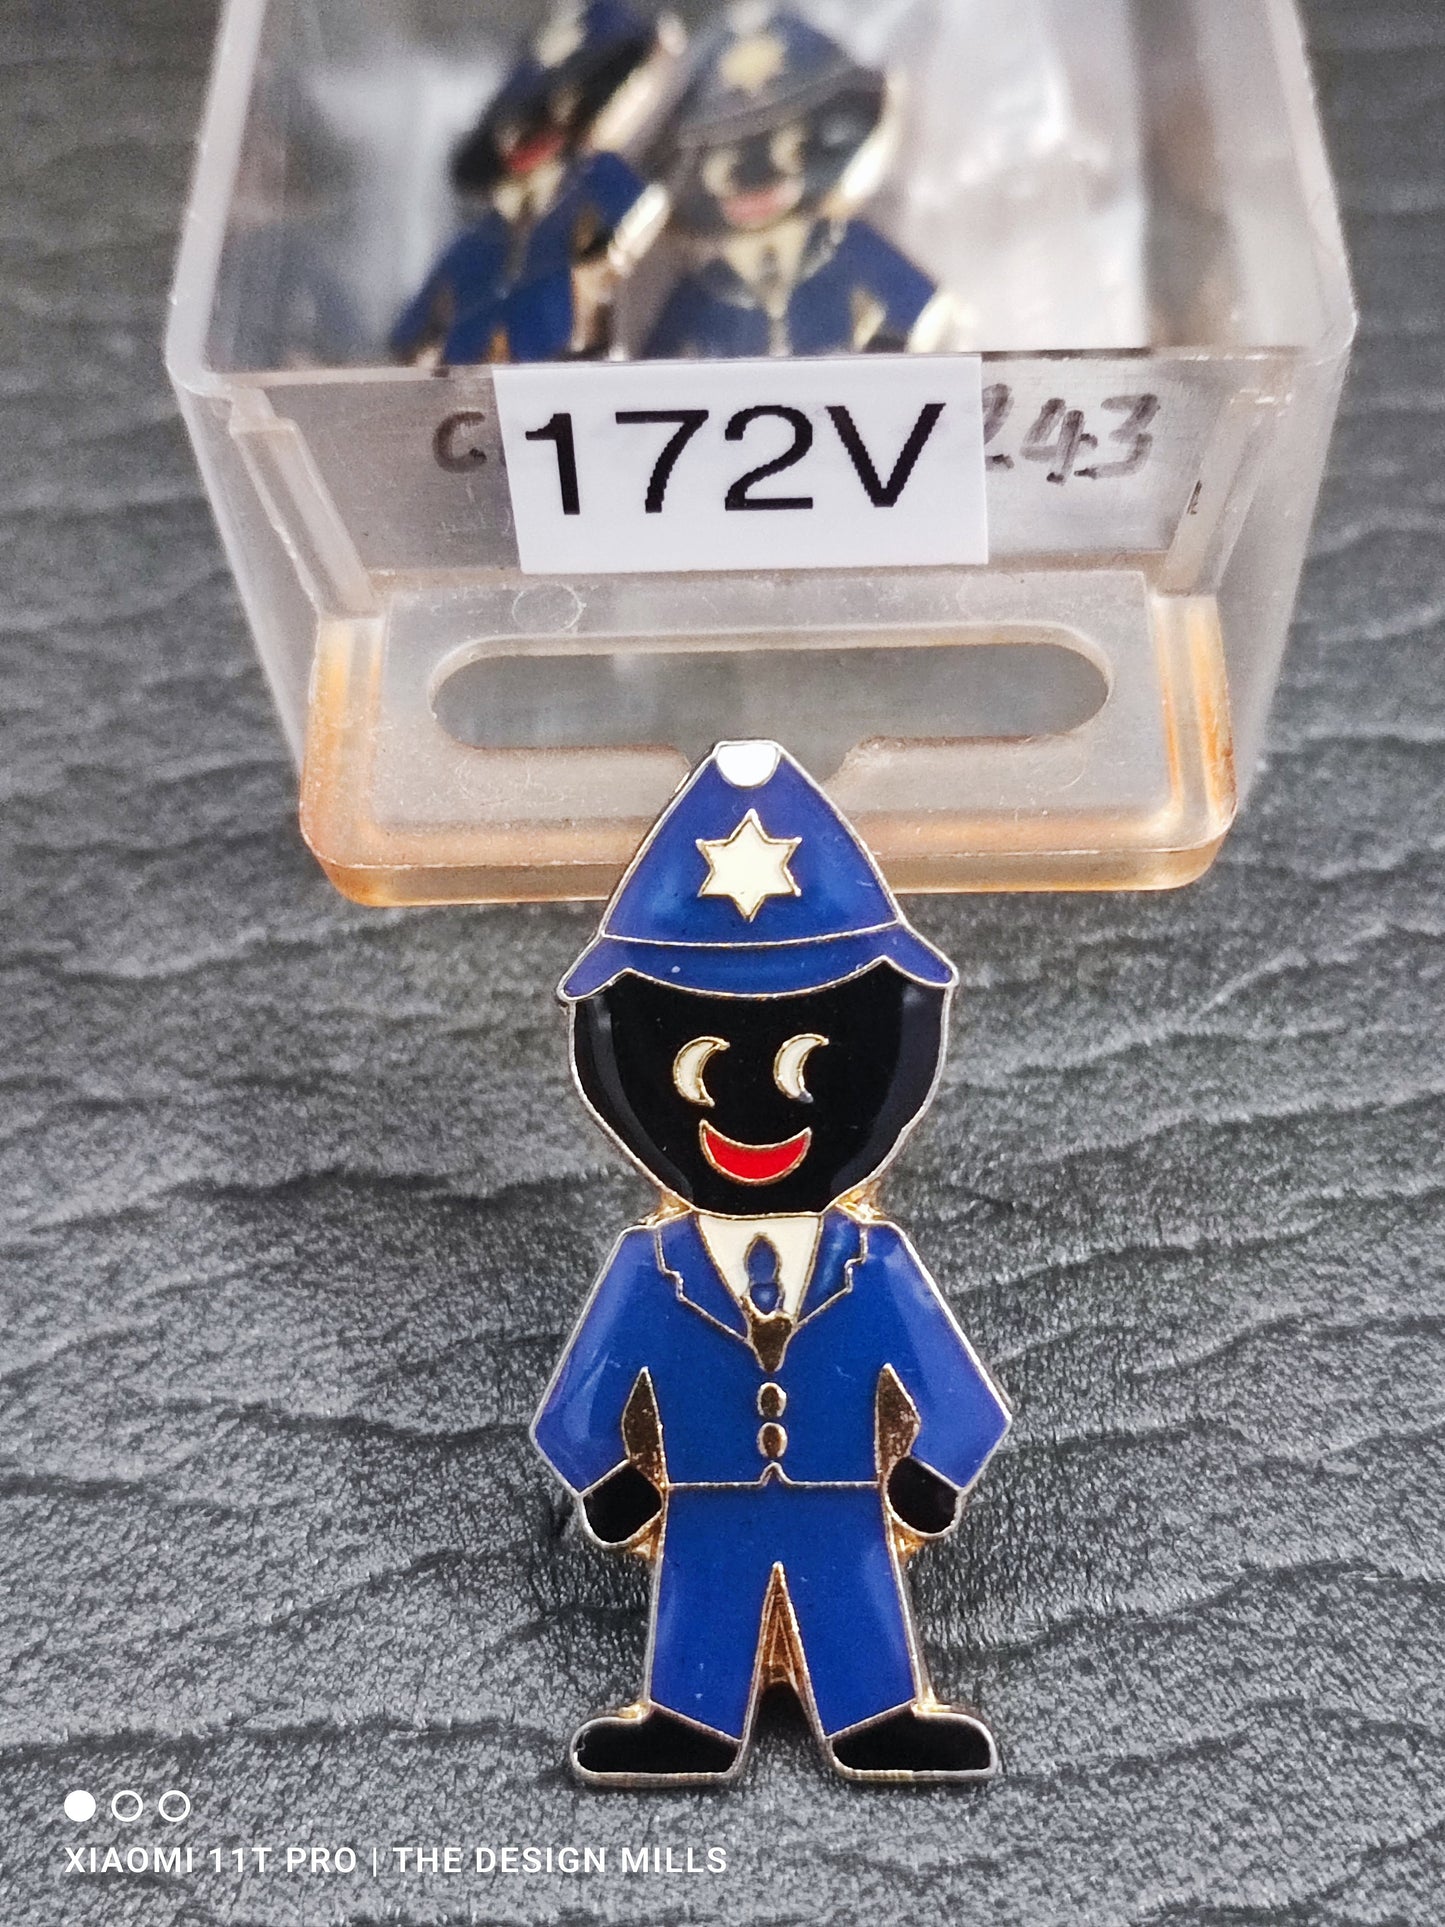 Policeman 172V